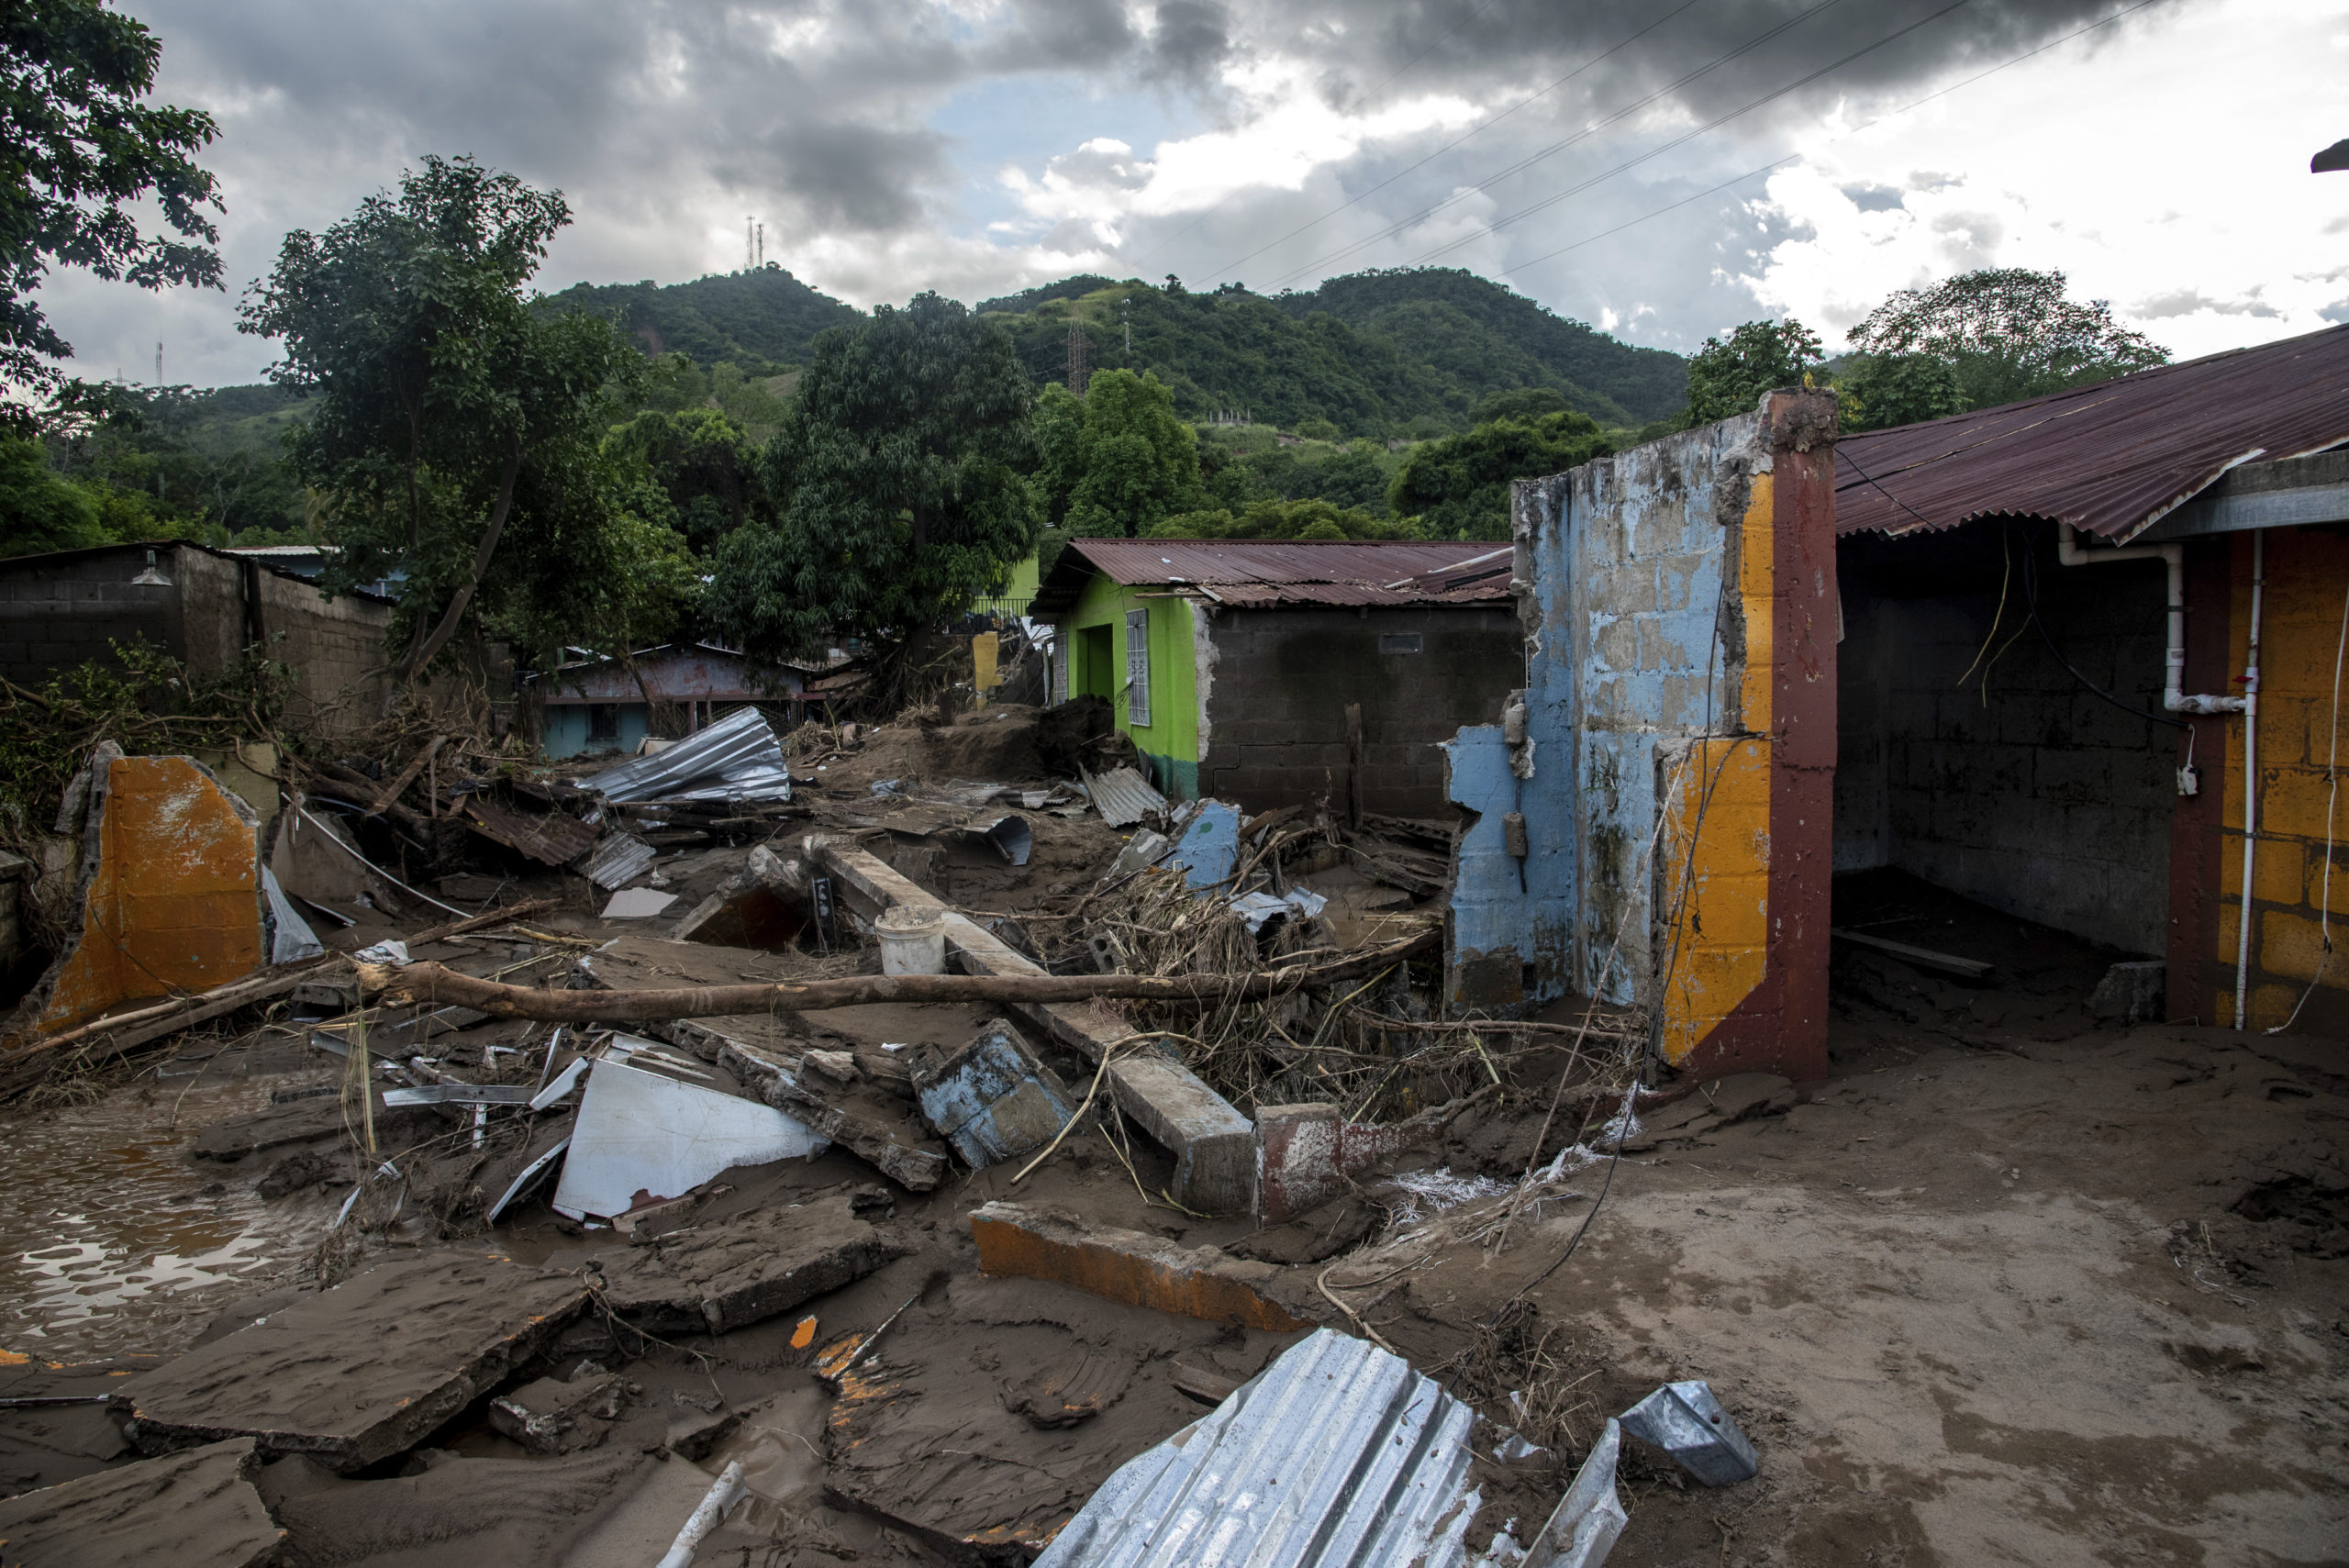 Collapsed houses in Honduras